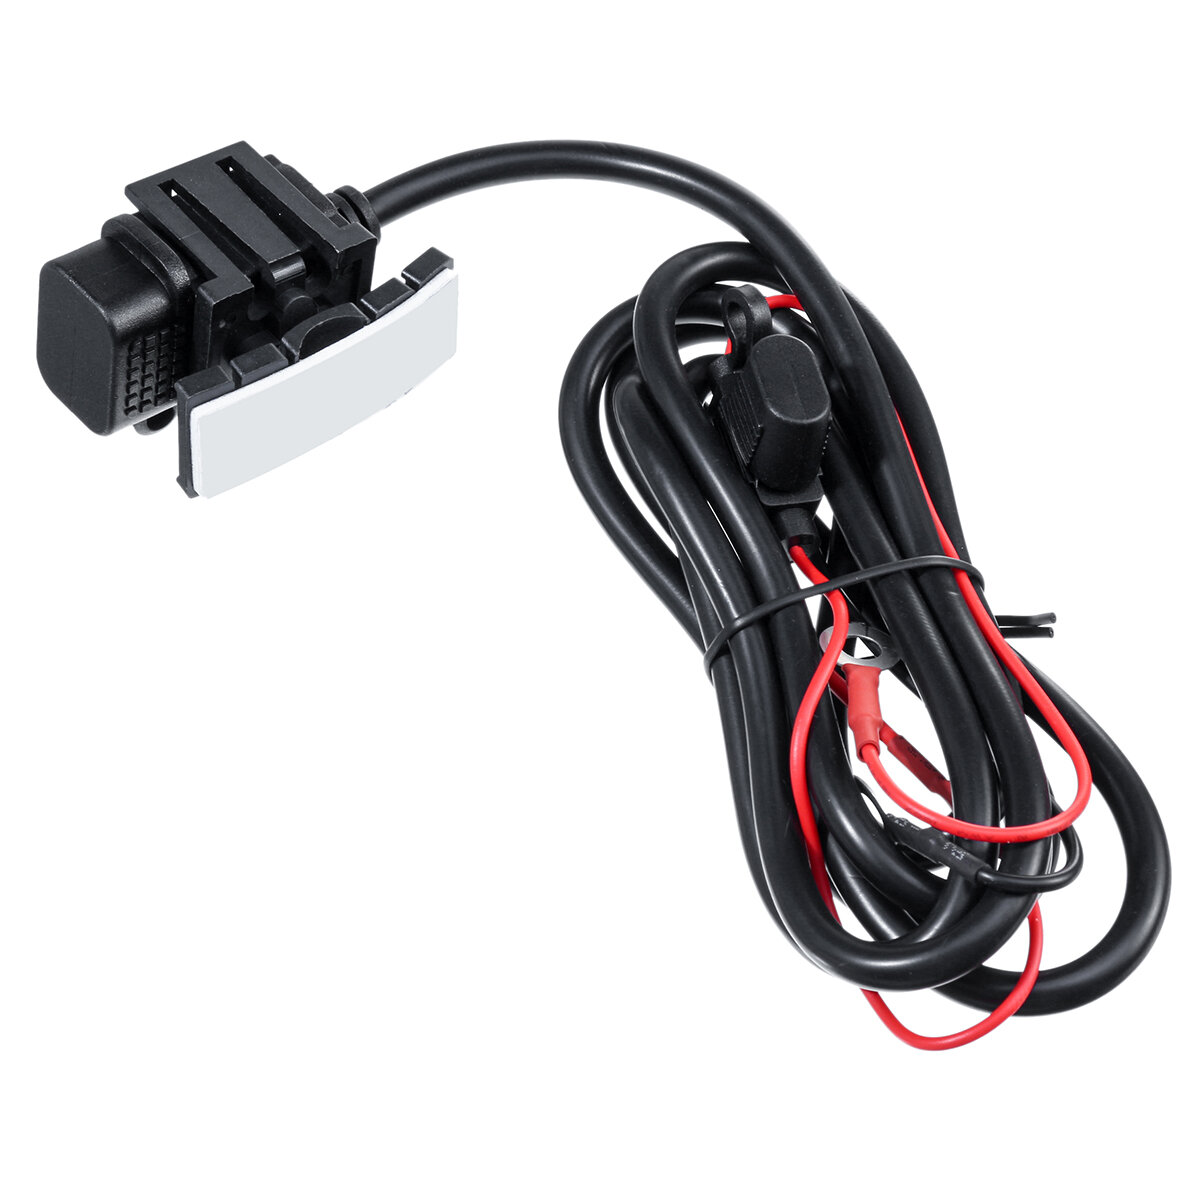 

12V 24V 2.1A Зарядное устройство USB Power Разъем Адаптер розетки Водонепроницаемы с предохранителем 10A Для ATV мотоцик